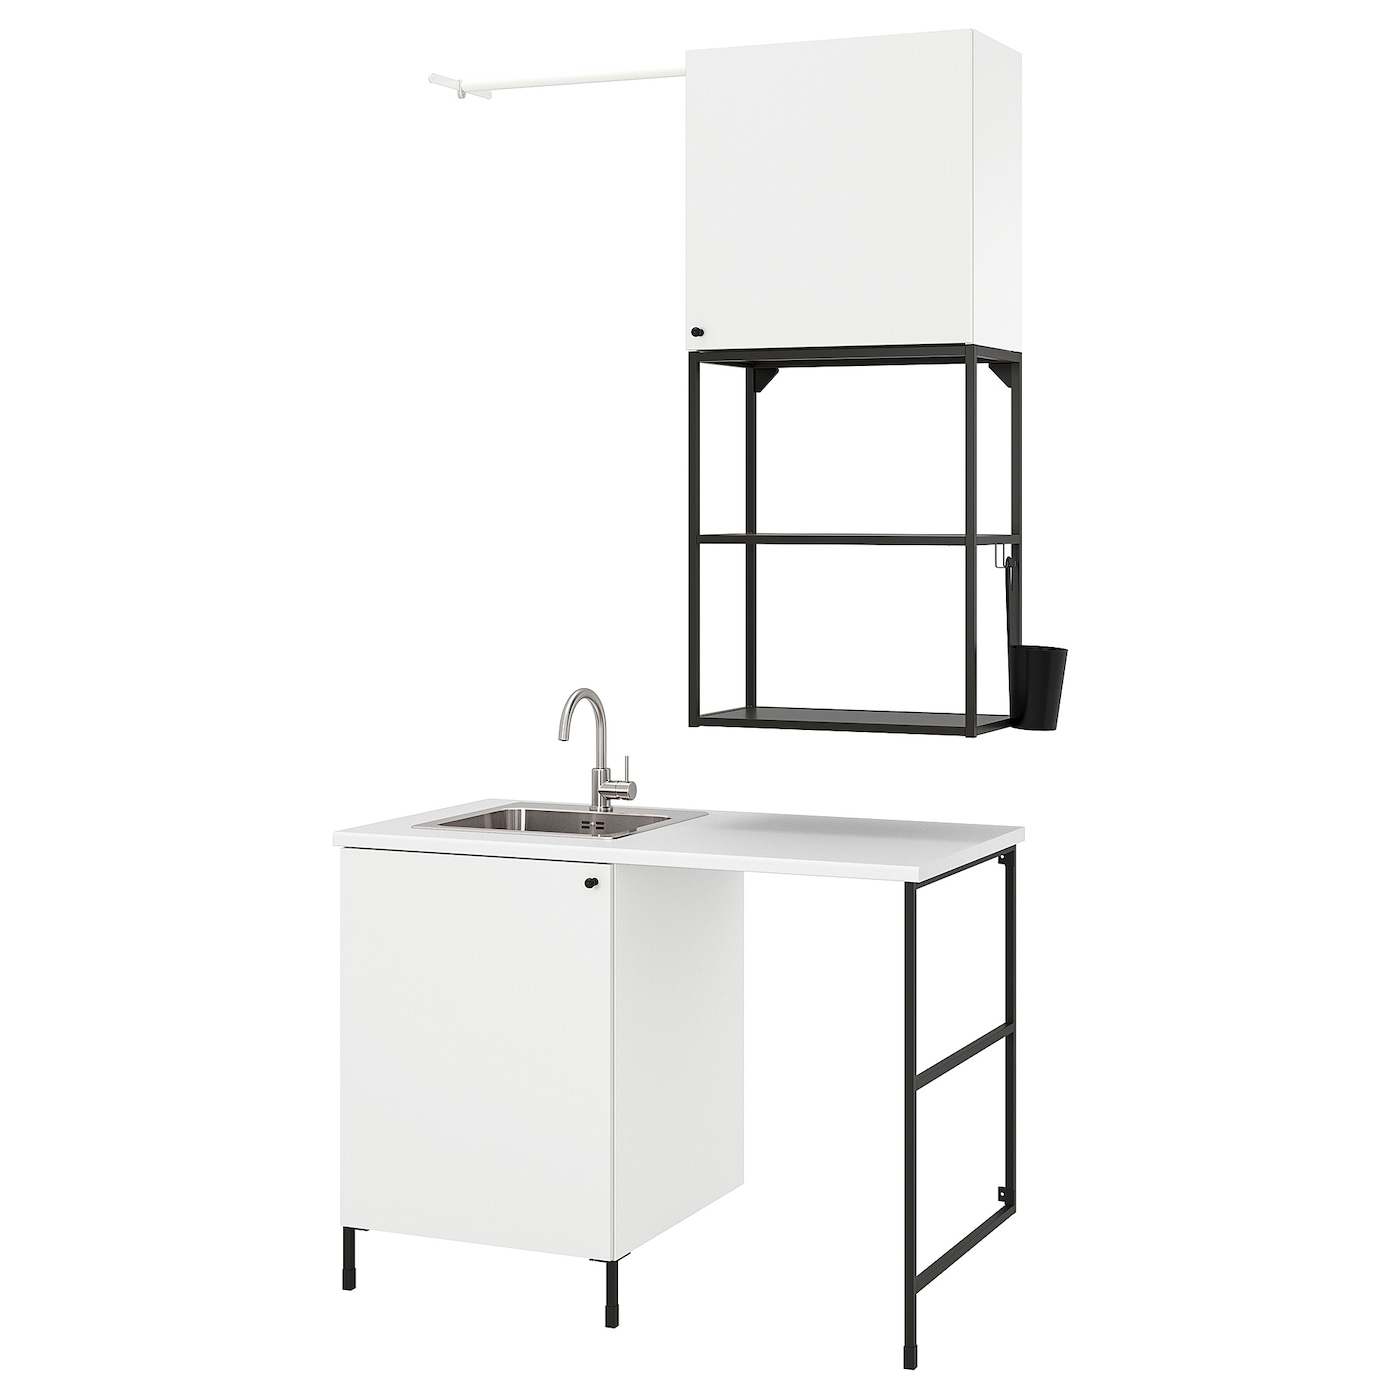 Комбинация для ванной - IKEA ENHET,  139x63.5x87.5 см, белый/антрацит, ЭНХЕТ ИКЕА